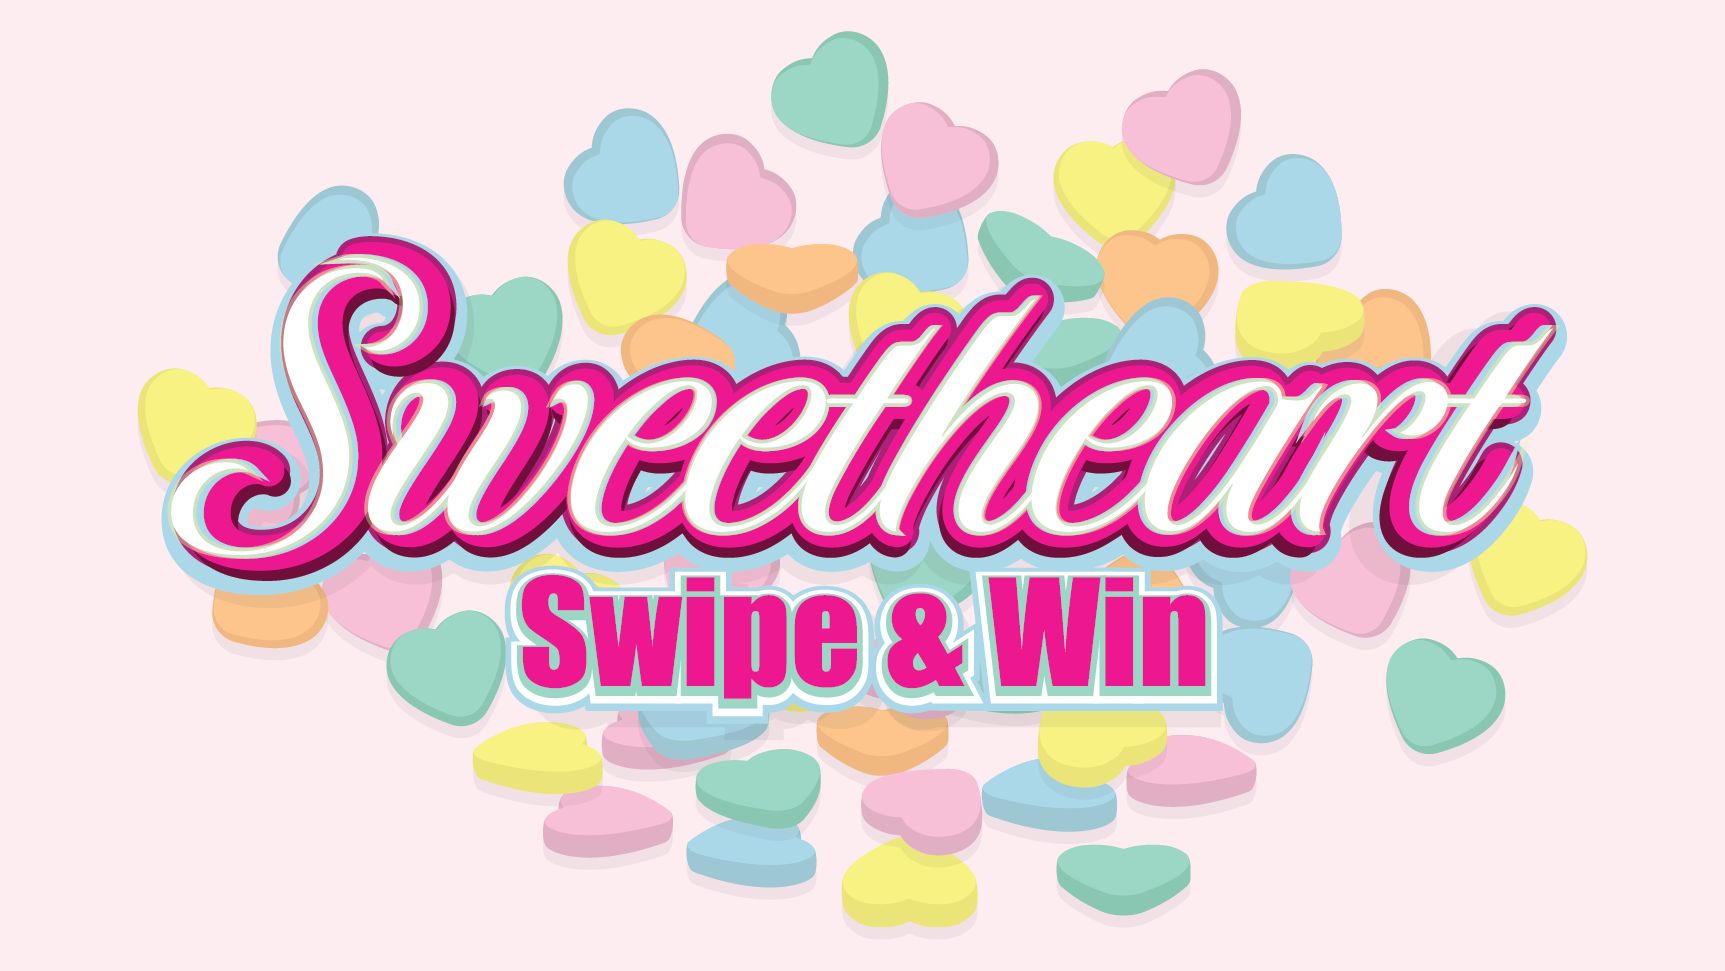 Sweetheart Swipe1656x932